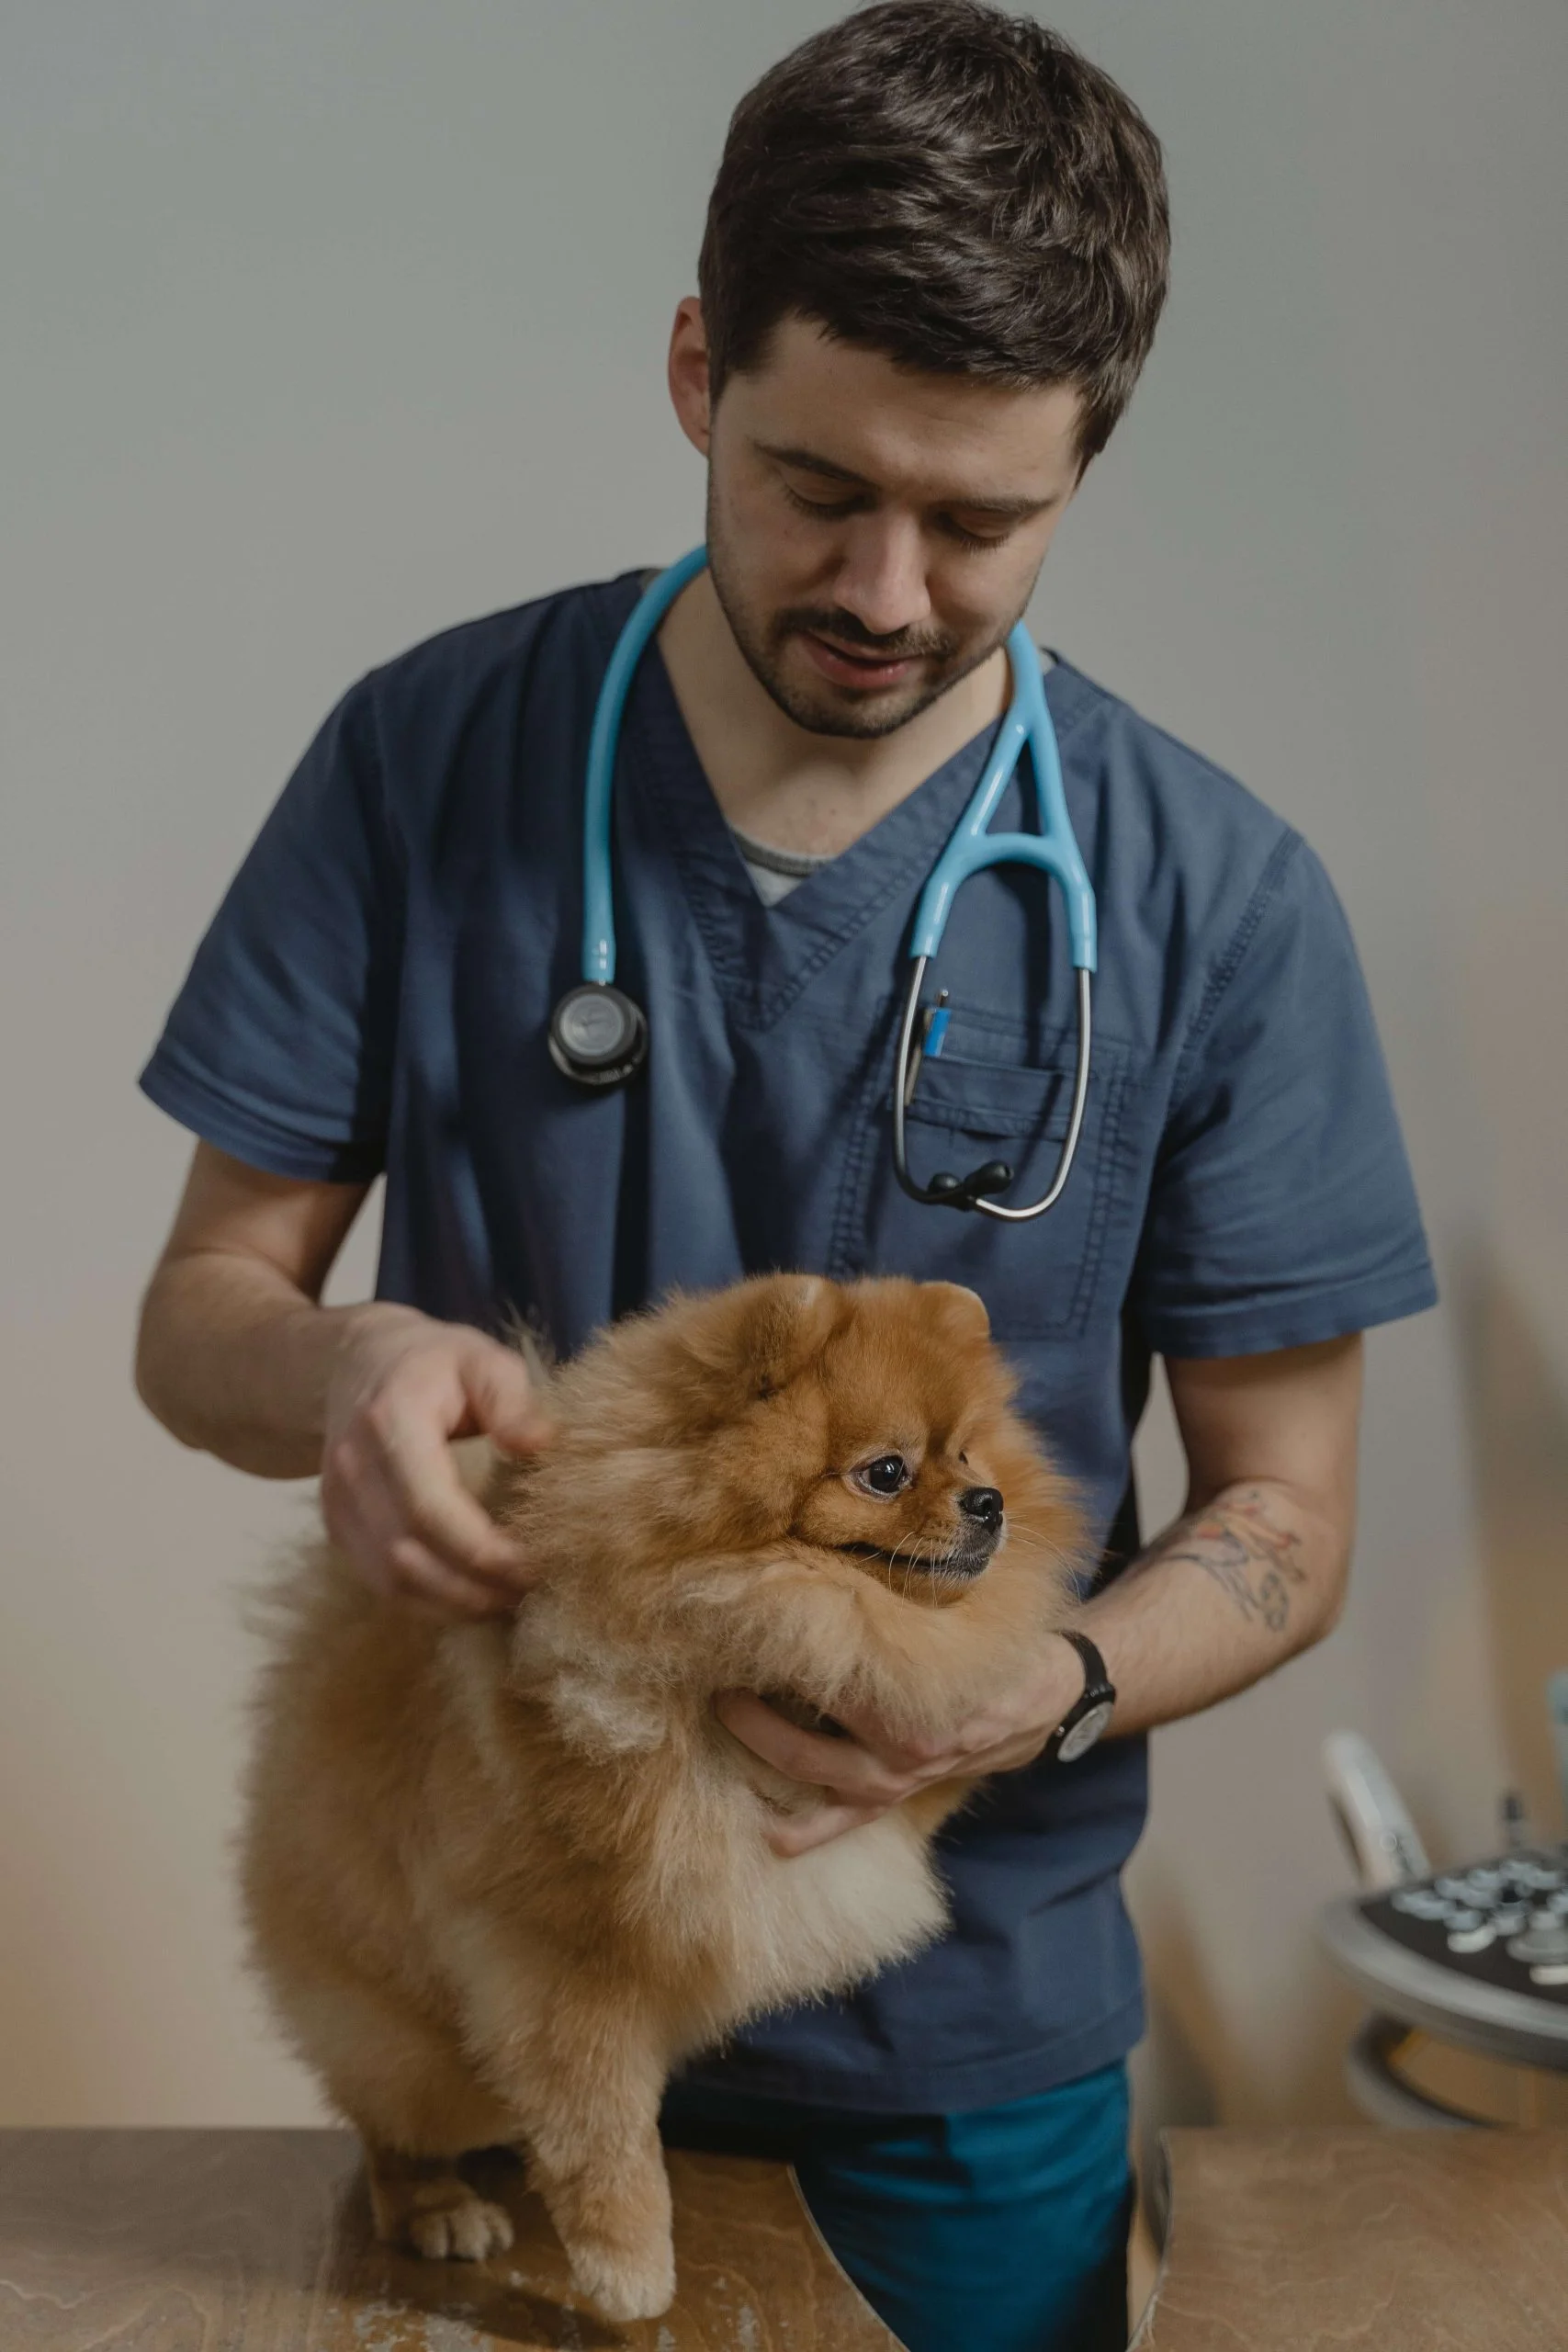 When should you visit a vet? 